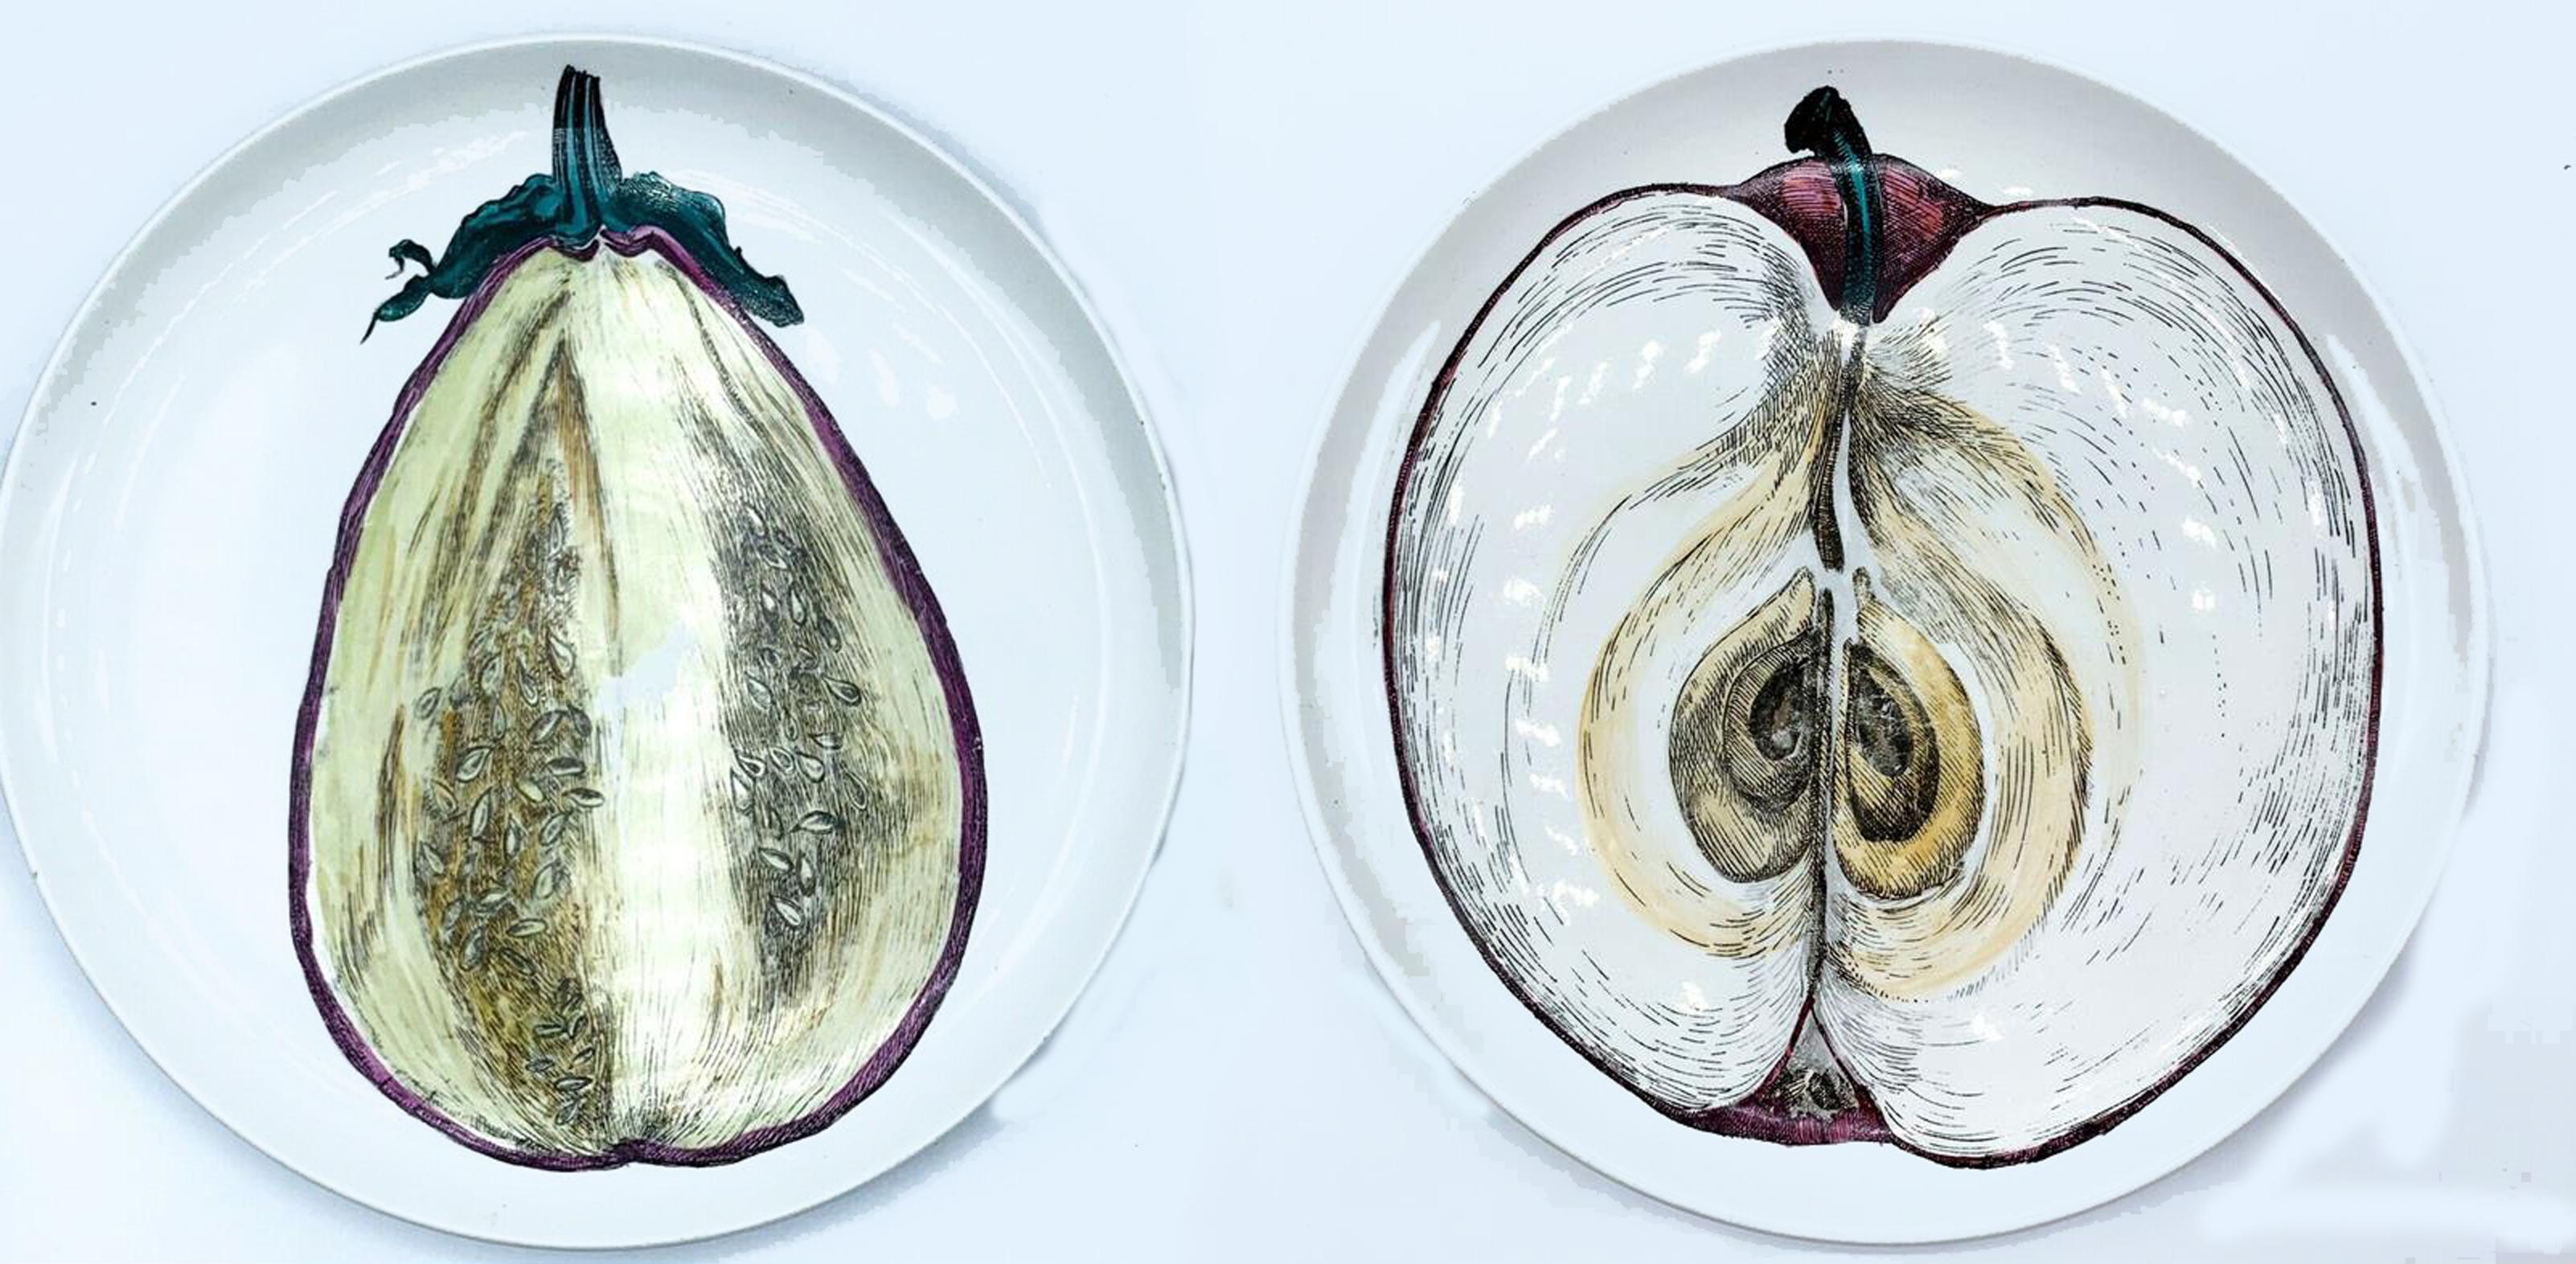 Piero Fornasetti Sezioni Di Frutta Porcelain Plates of an Eggplant & Apple For Sale 1